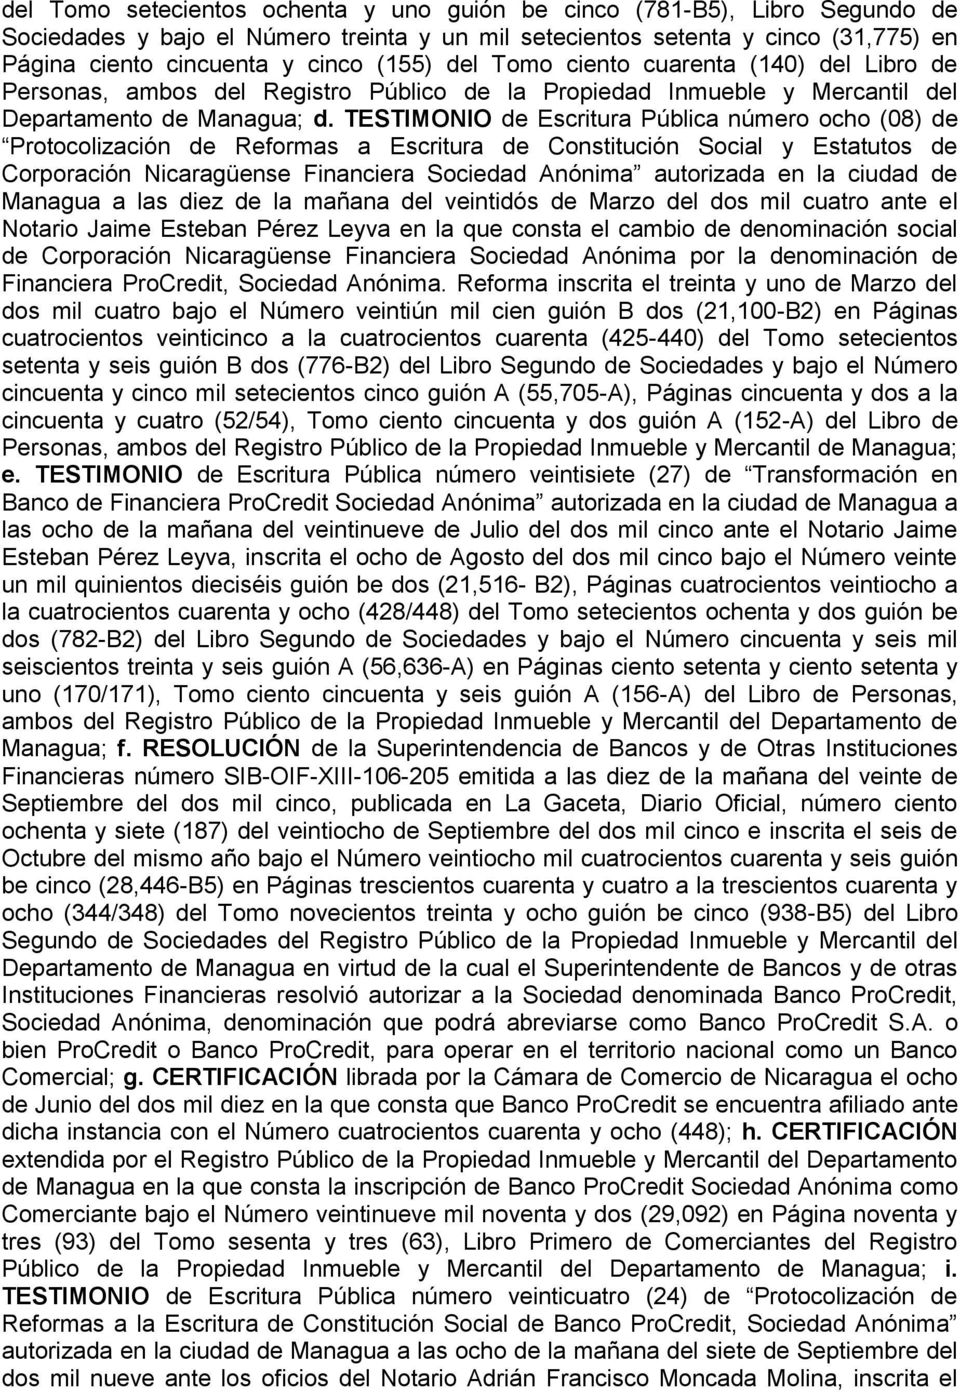 TESTIMONIO de Escritura Pública número ocho (08) de Protocolización de Reformas a Escritura de Constitución Social y Estatutos de Corporación Nicaragüense Financiera Sociedad Anónima autorizada en la